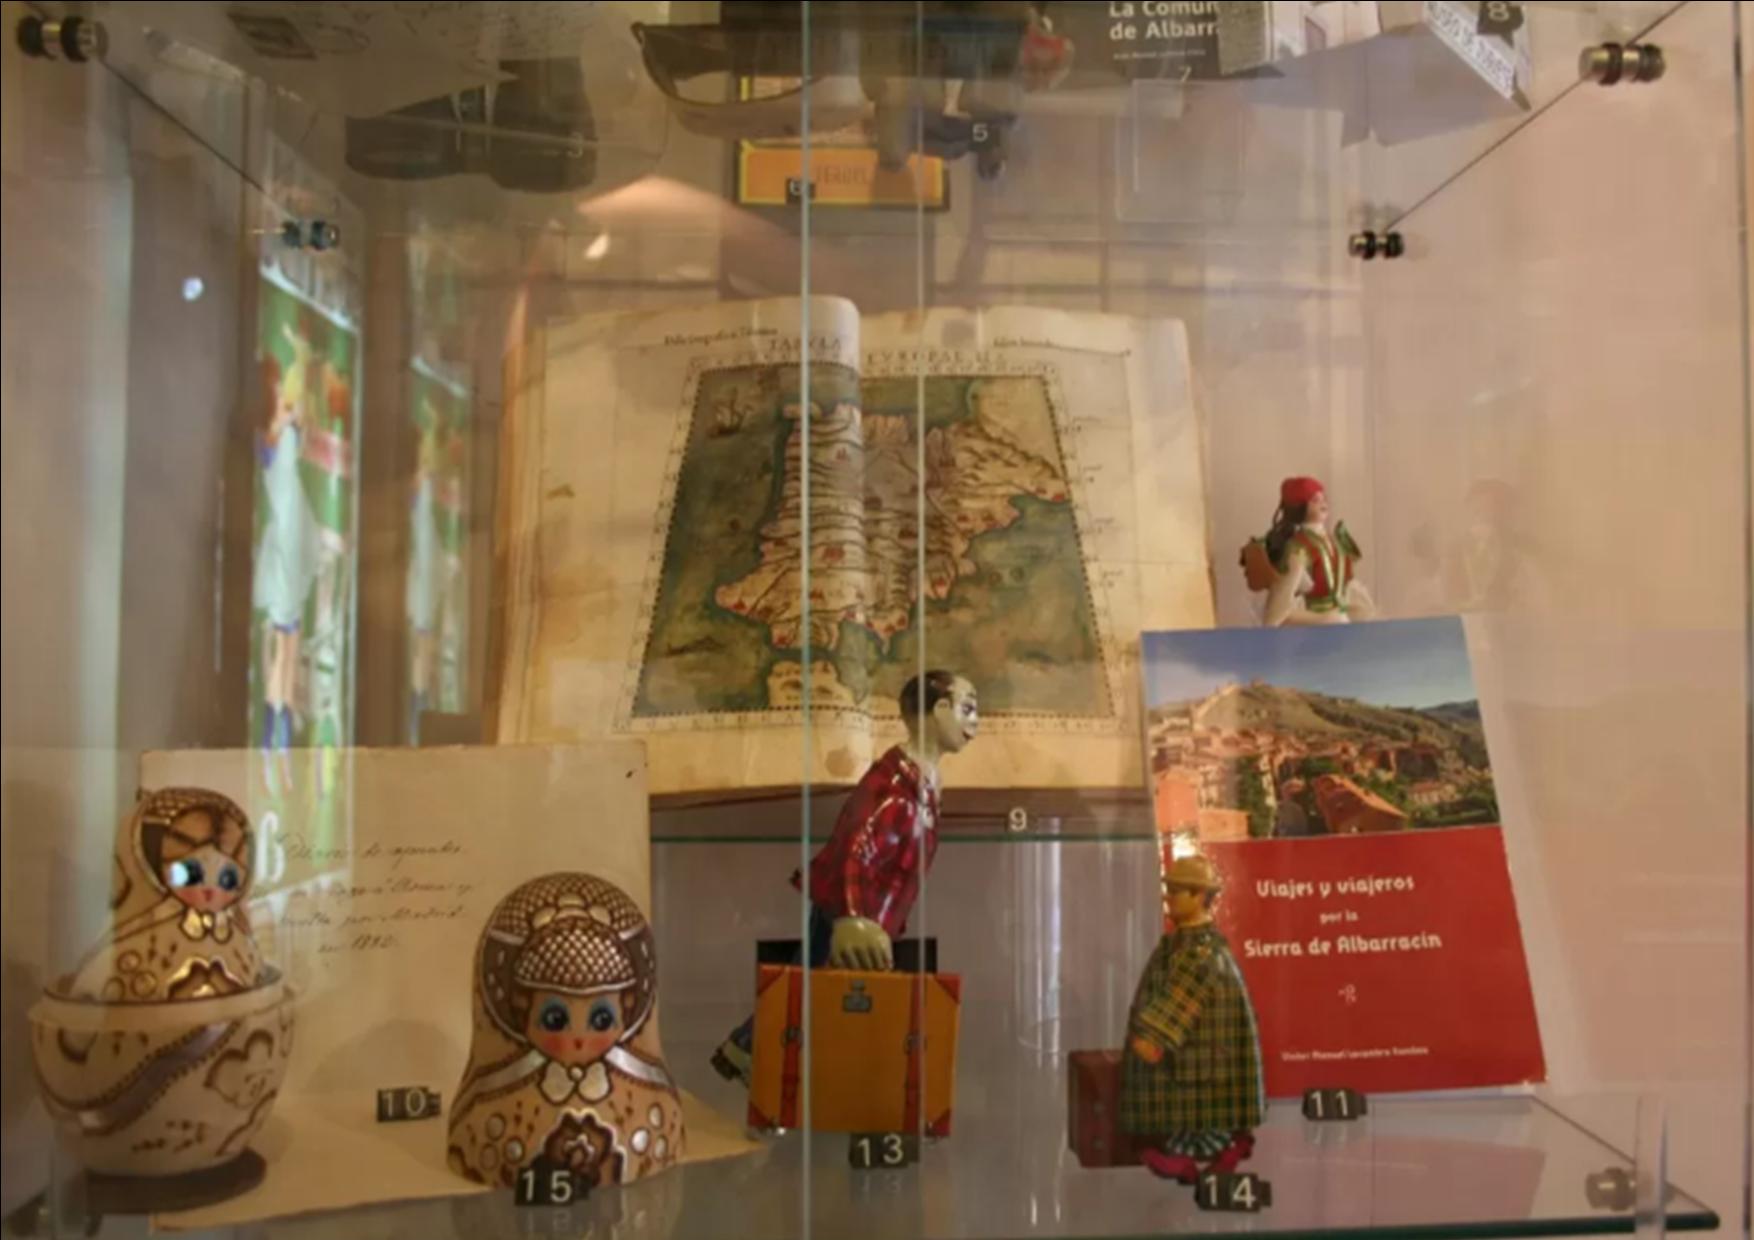 Noticia Diario de Teruel: El Museo del Turismo cuenta con 65 salas en el mundo y una de ellas está en Albarracín